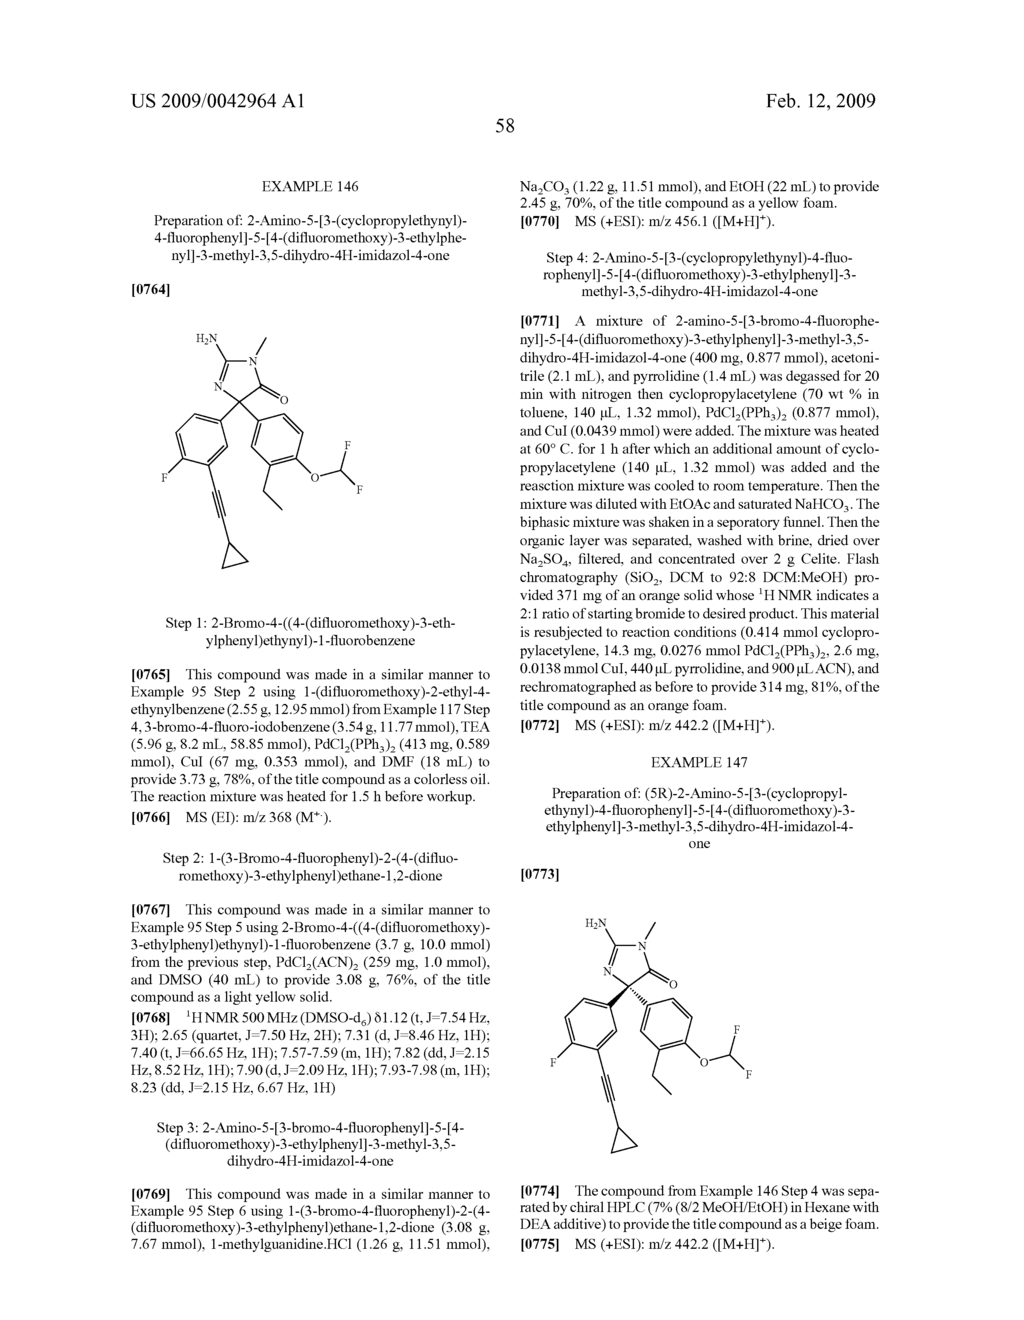 AMINO-5-[SUBSTITUTED-4-(DIFLUOROMETHOXY)PHENYL]-5-PHENYLIMIDAZOLONE COMPOUNDS AS BETA-SECRETASE INHIBITORS - diagram, schematic, and image 59